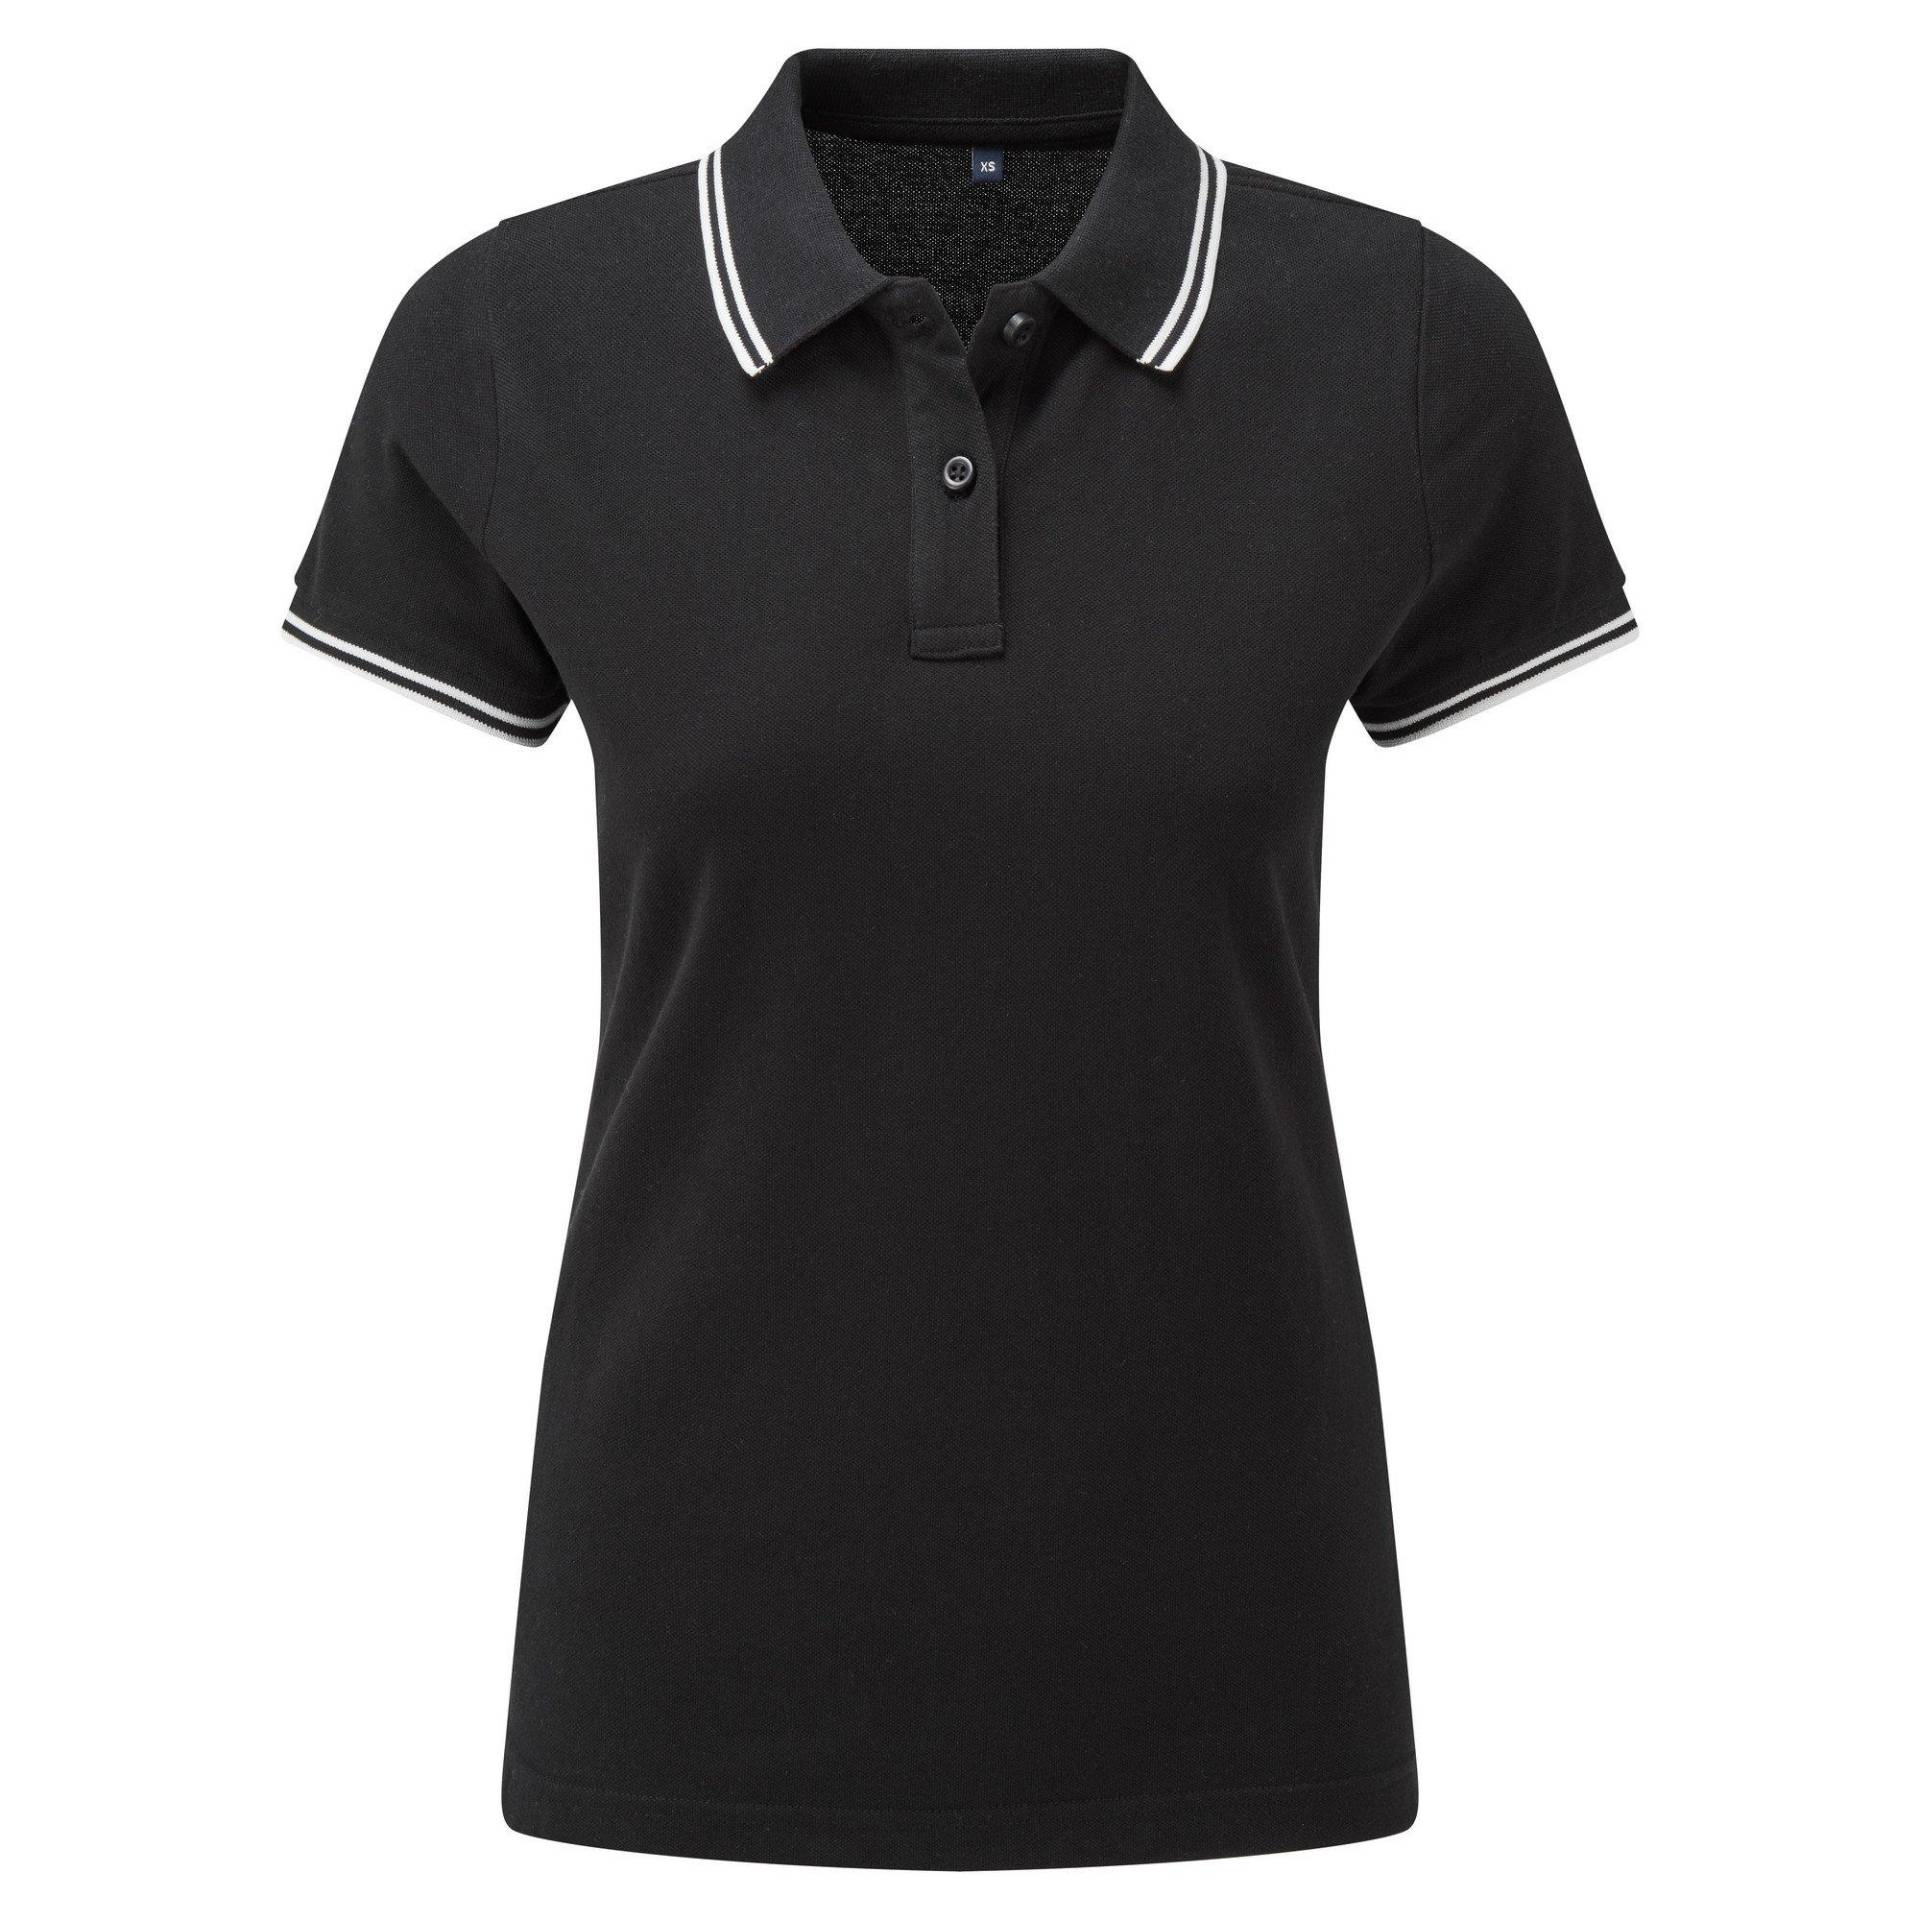 Poloshirt Mit Kontrastfarbenen Streifen Damen Schwarz S von Asquith & Fox